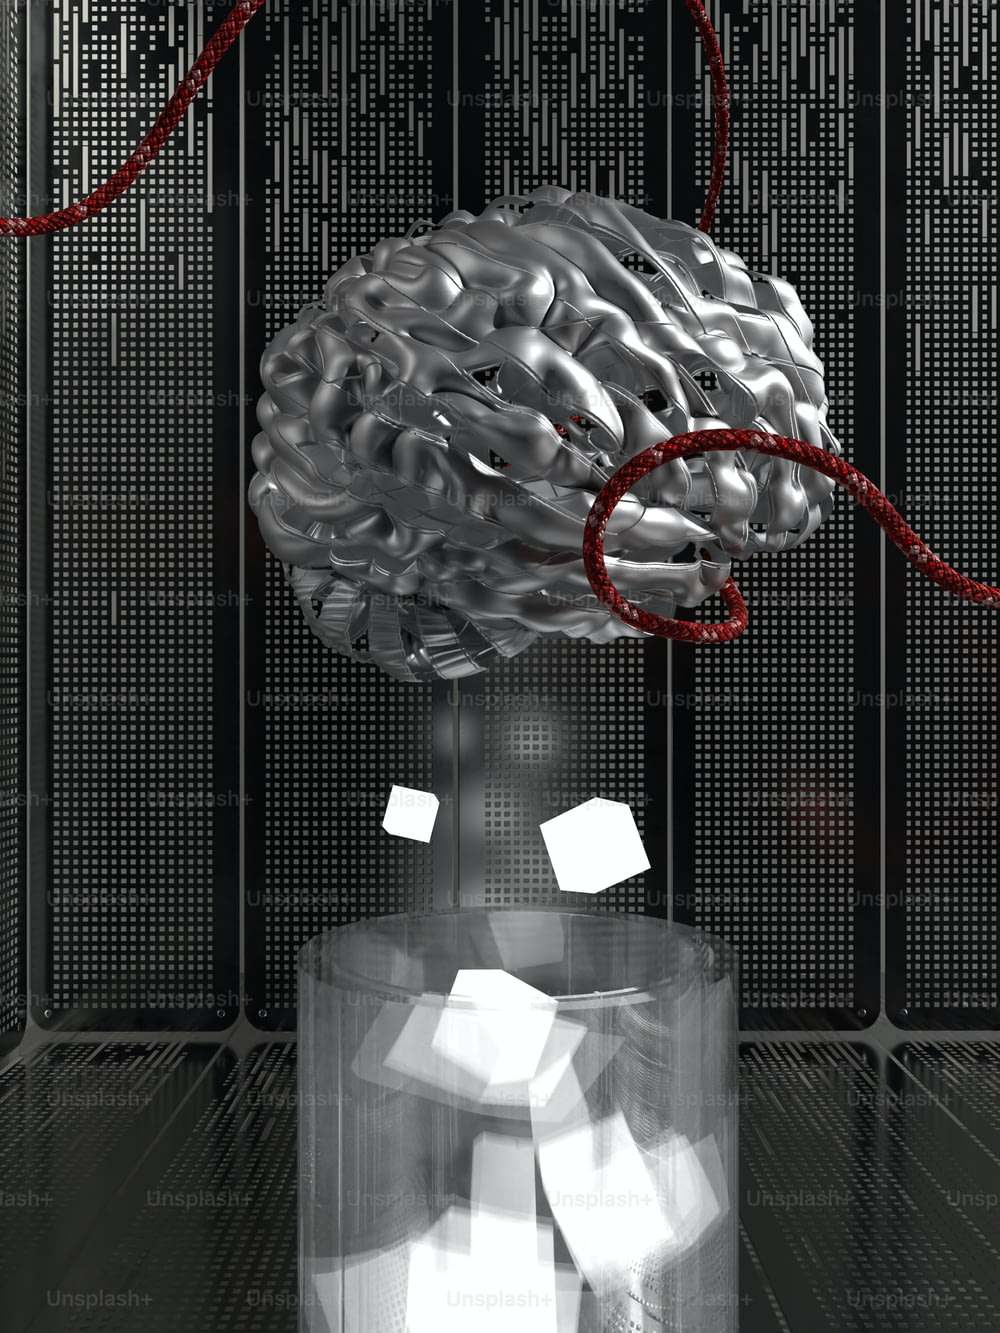 빨간 끈이 달린 유리 용기에 담긴 뇌